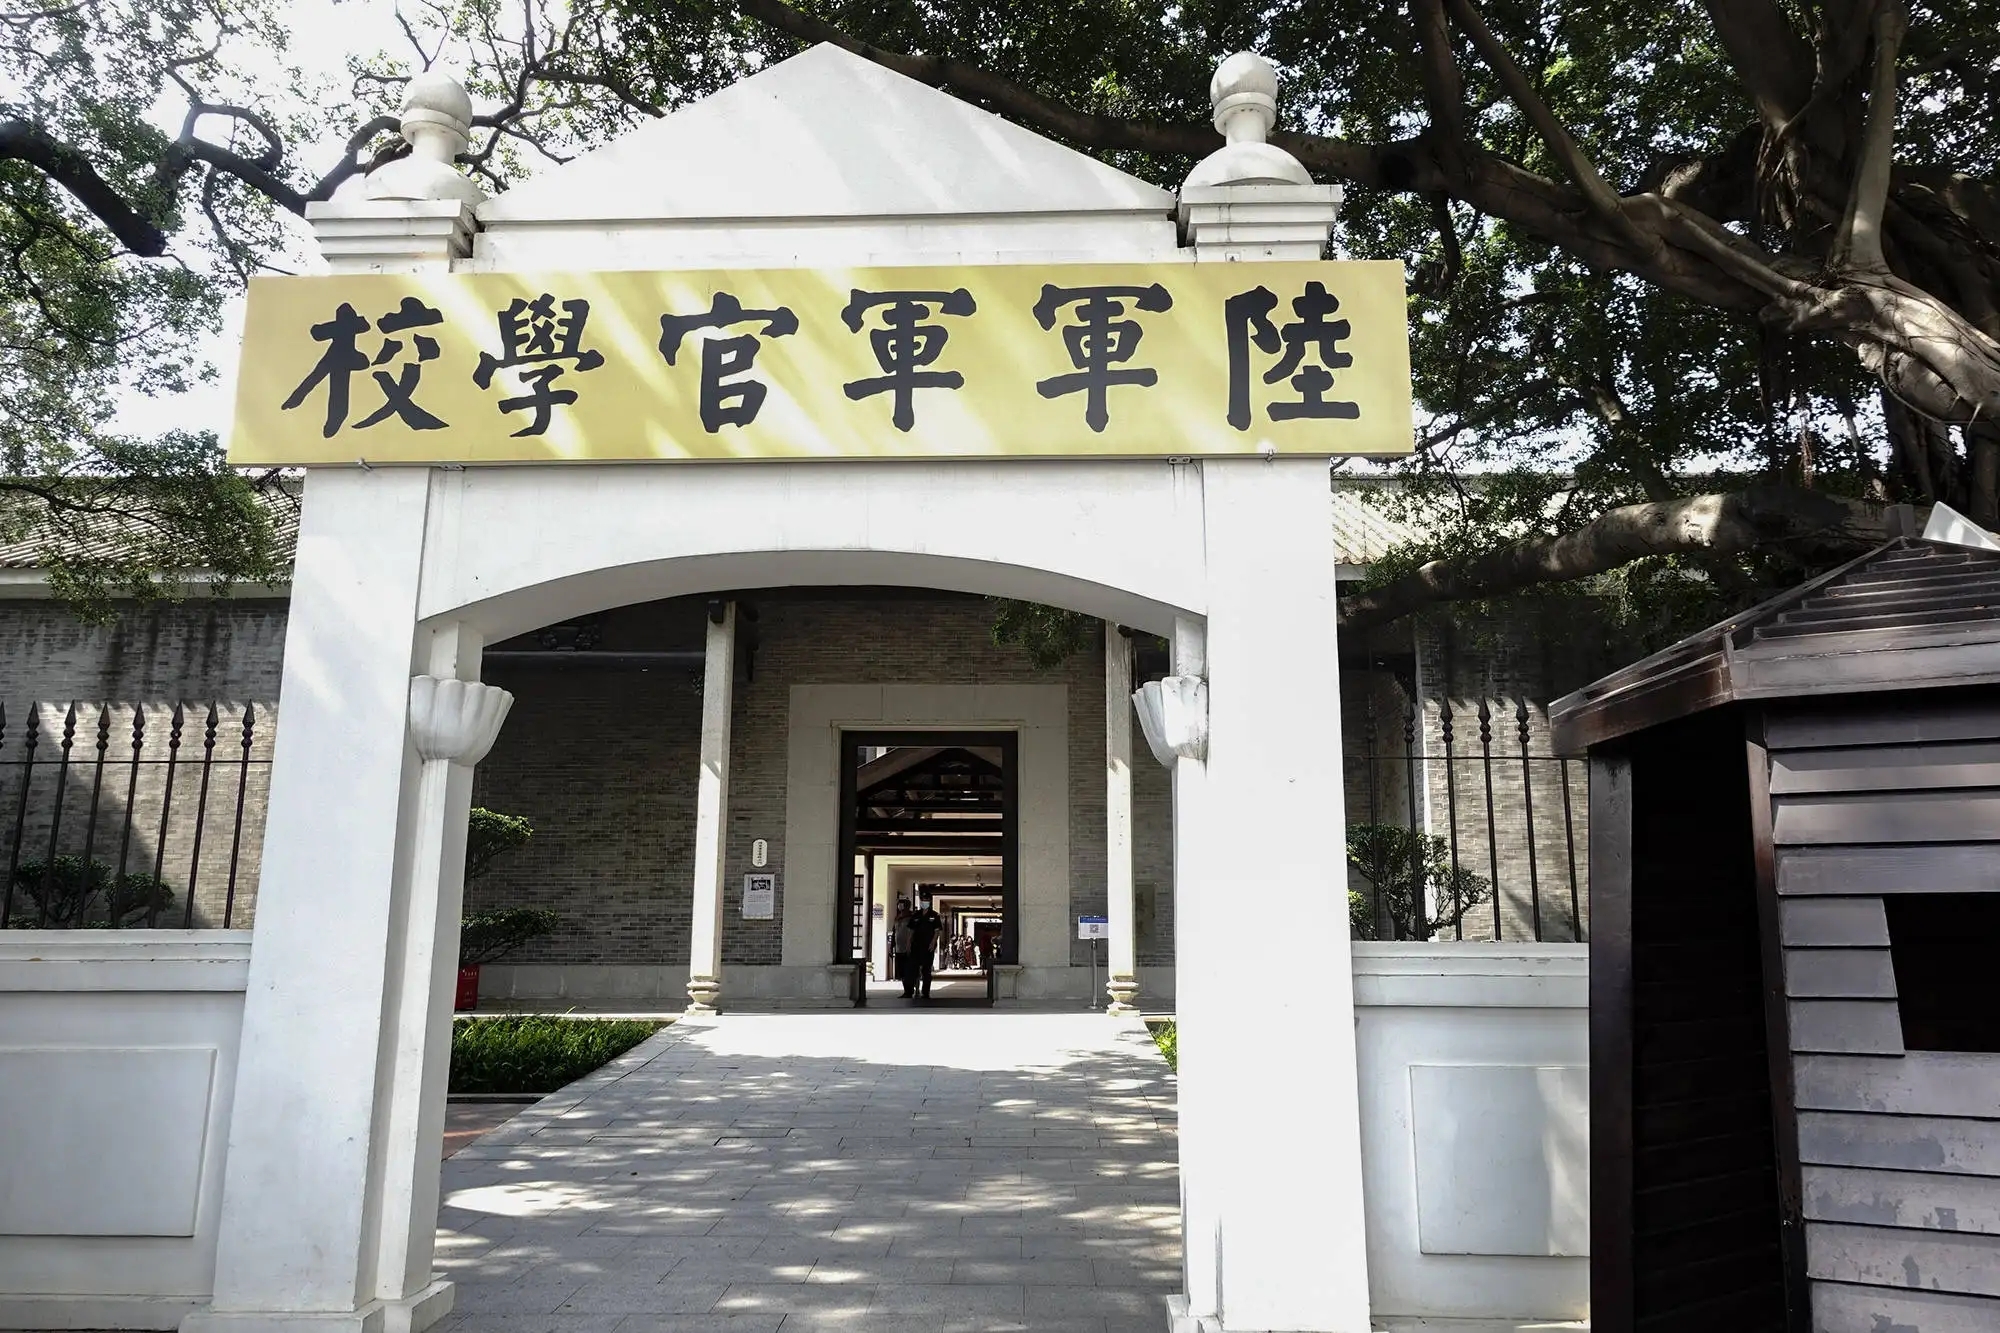 【携程攻略】广州黄埔军校旧址纪念馆景点,黄埔军校位于长洲岛上,是中国近代史的一个标志，也被叫做中国的“西…